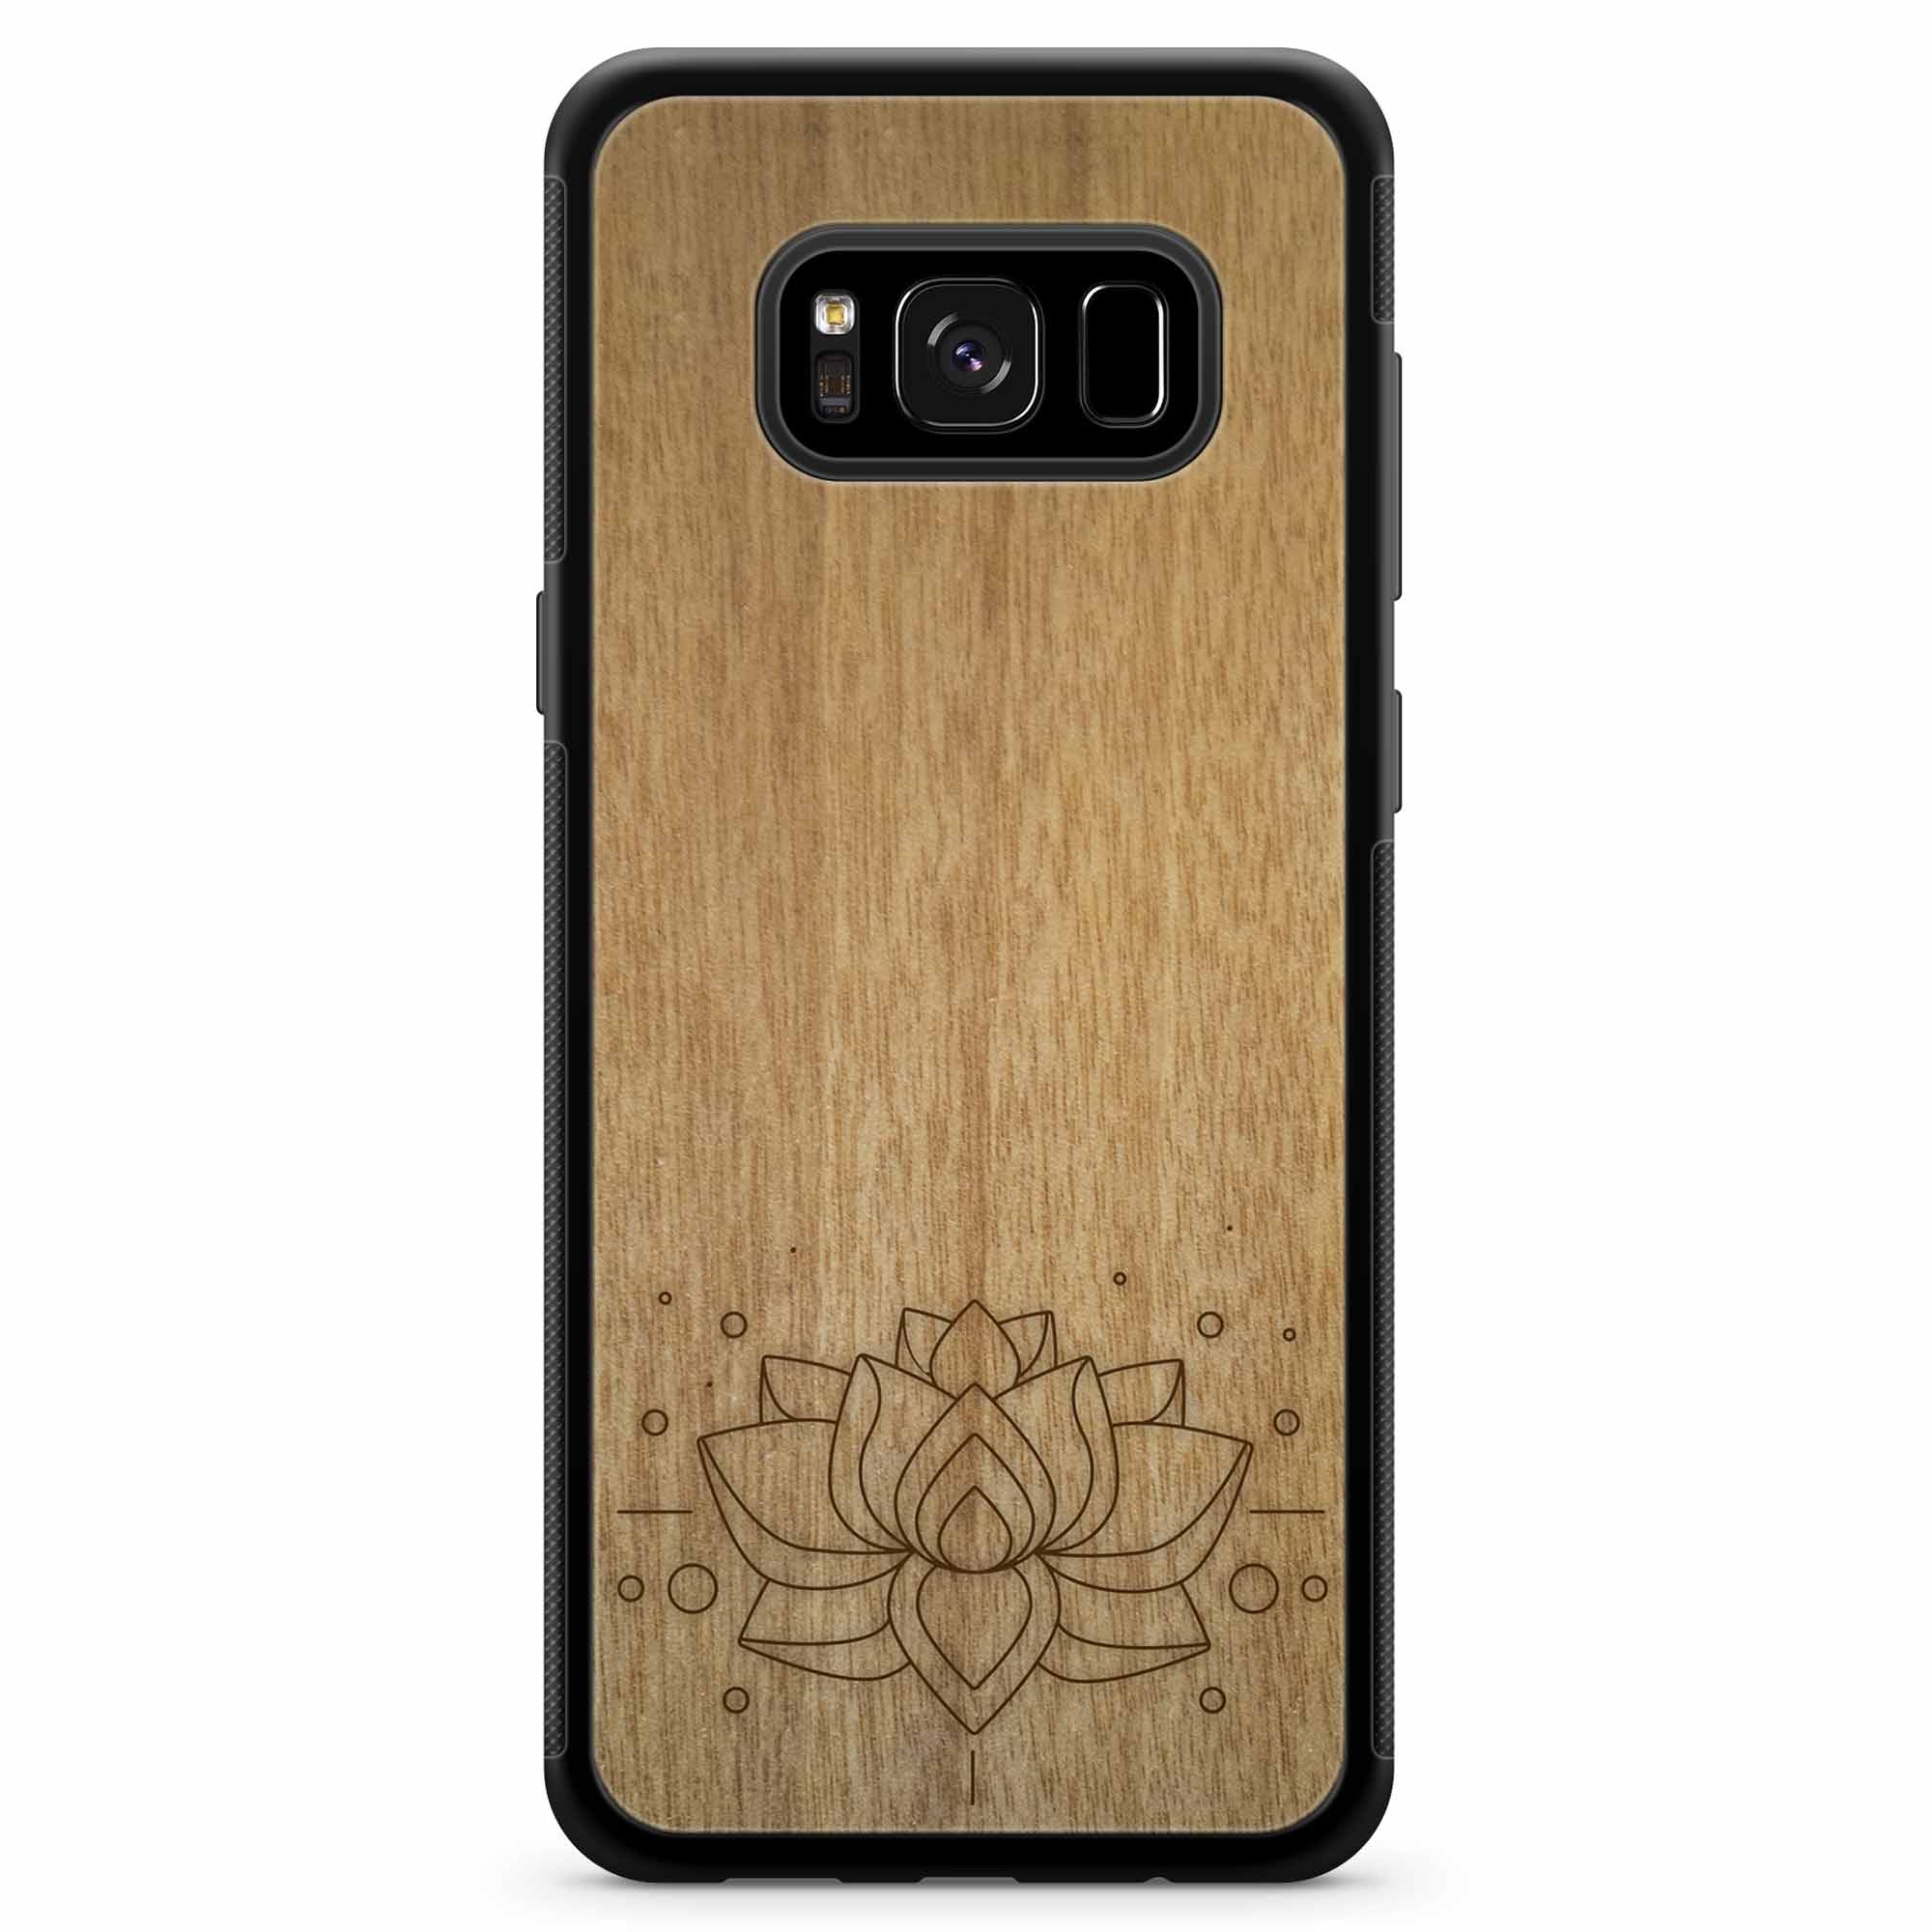 Carcasa de madera para teléfono con grabado Lotus Samsung S8